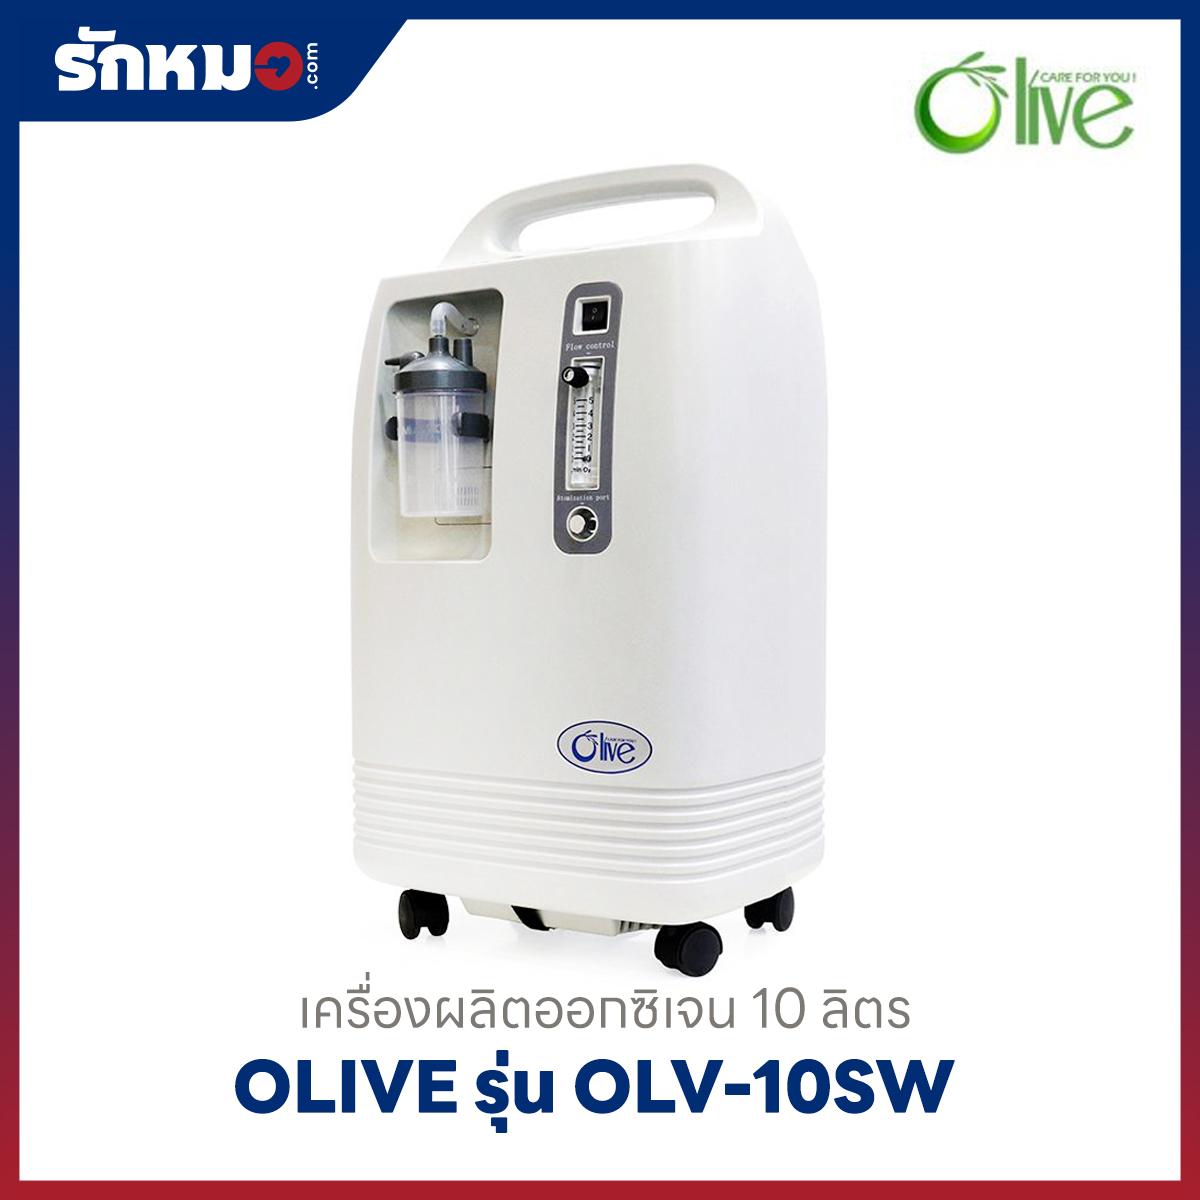 เครื่องผลิตออกซิเจน 10 ลิตร Olive รุ่น OLV-10SW